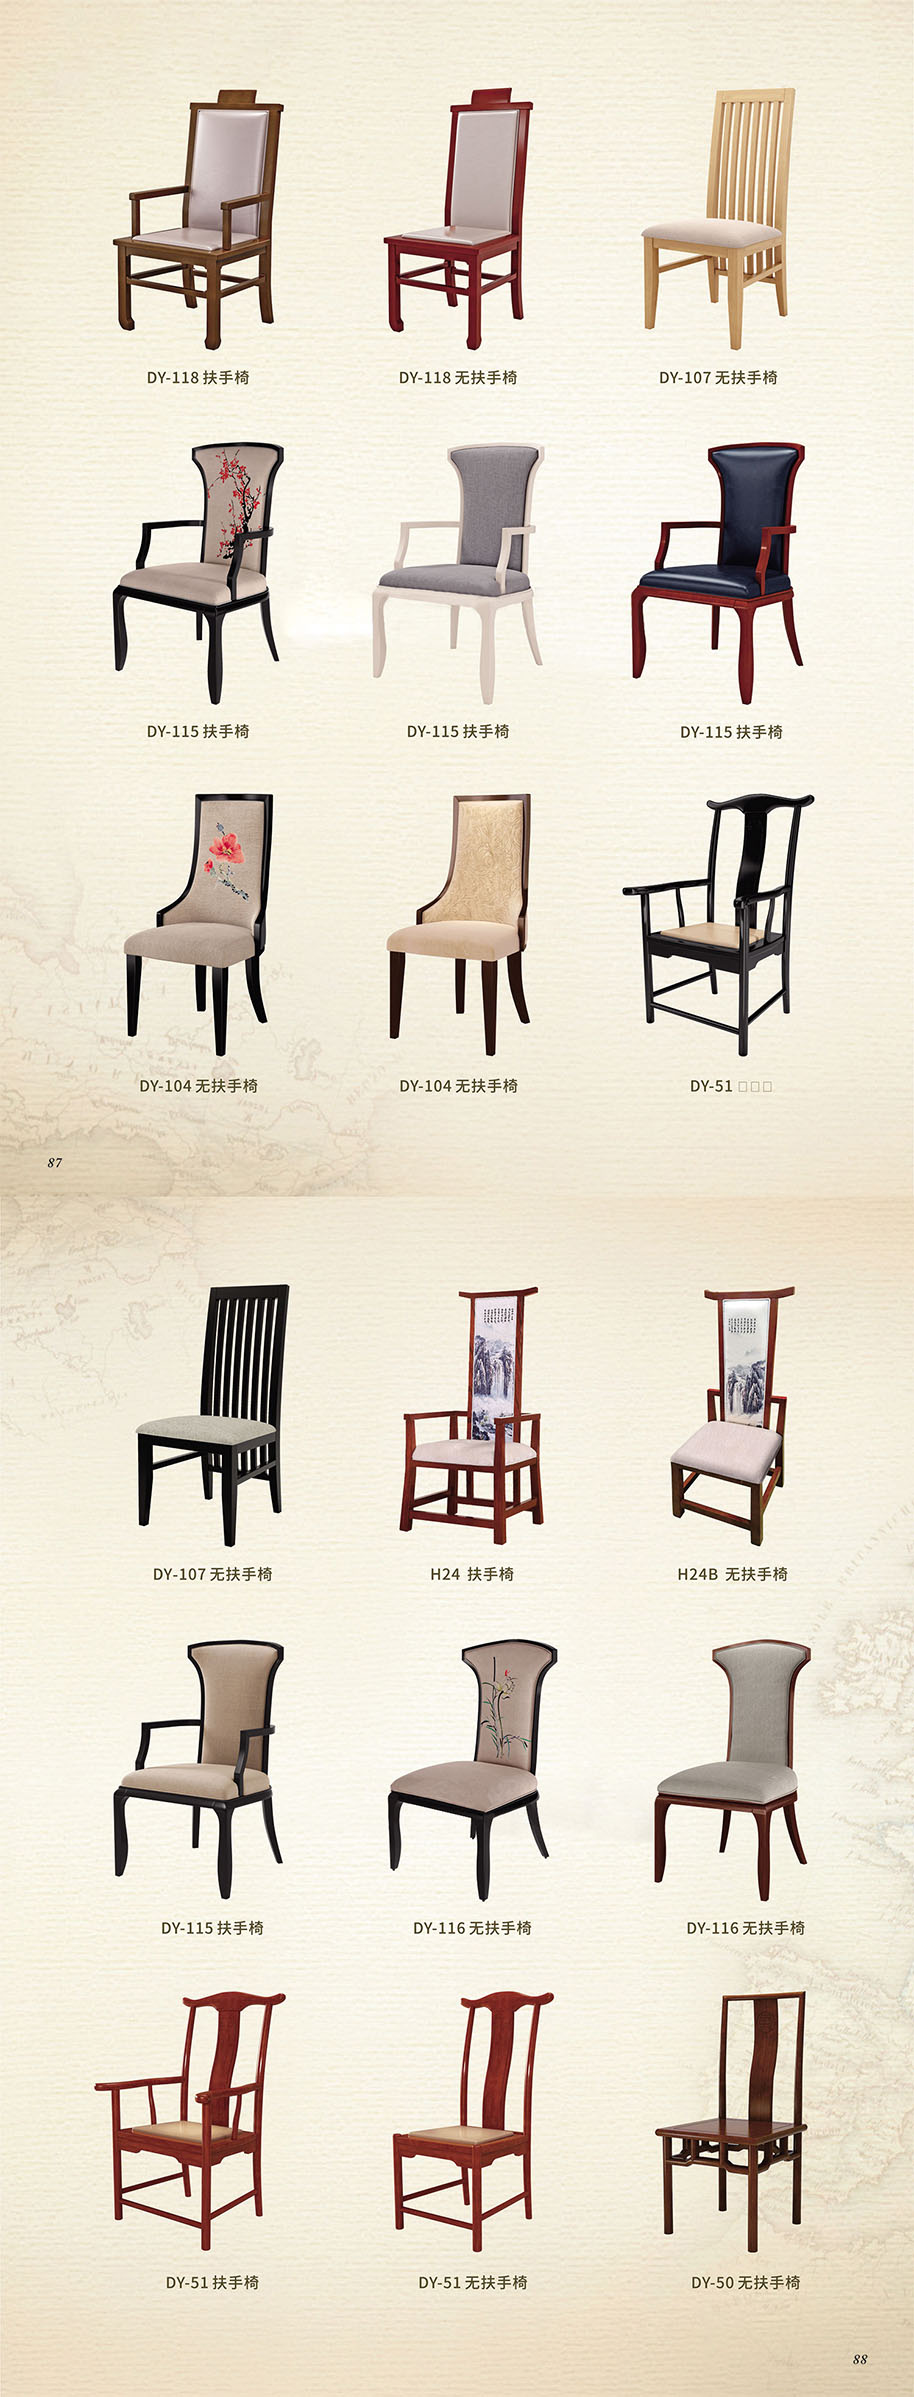 中式餐廳實木餐椅